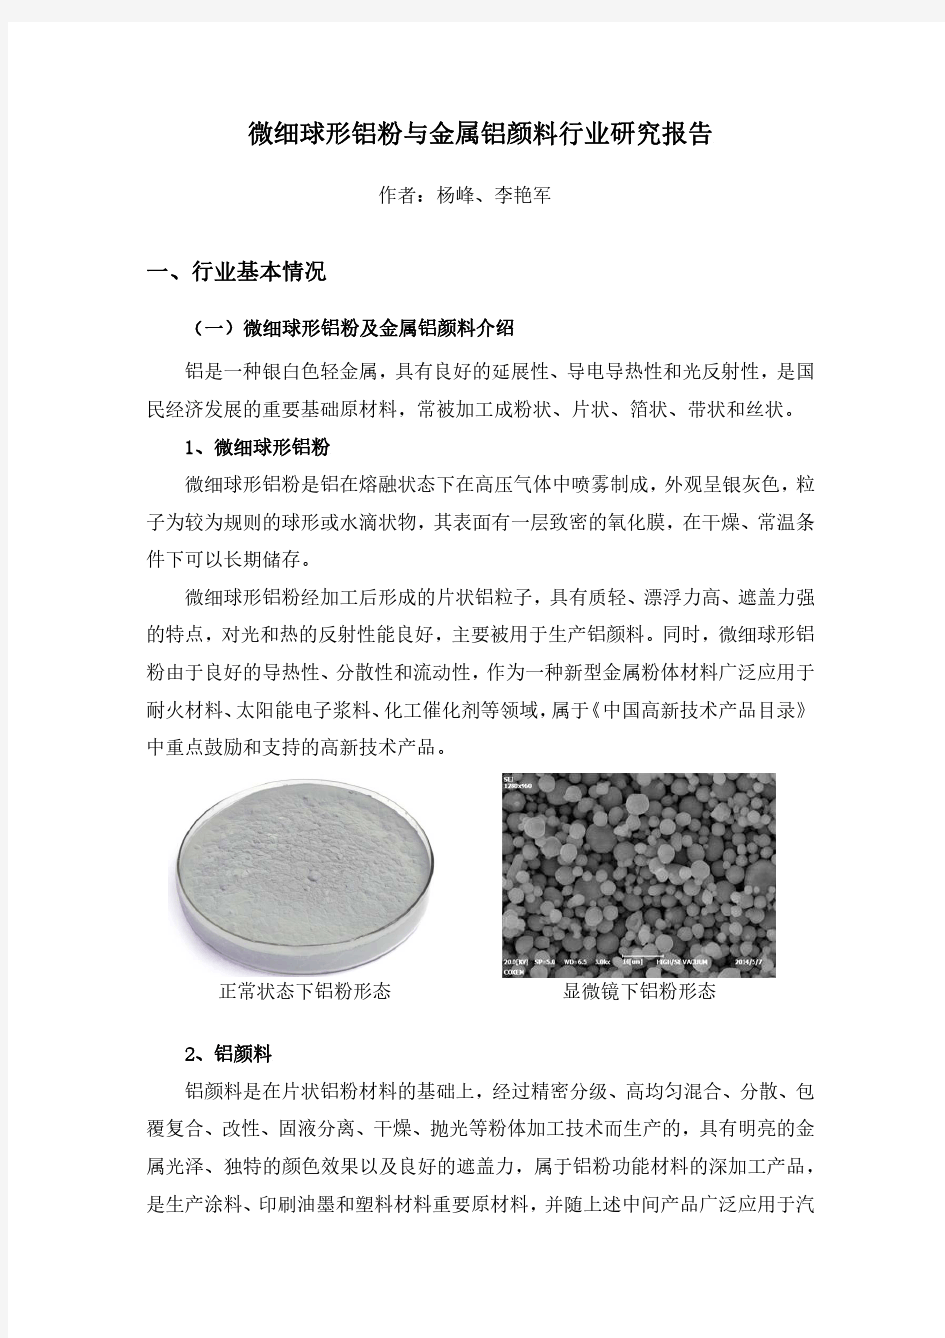 微细球形铝粉与金属铝颜料行业研究报告